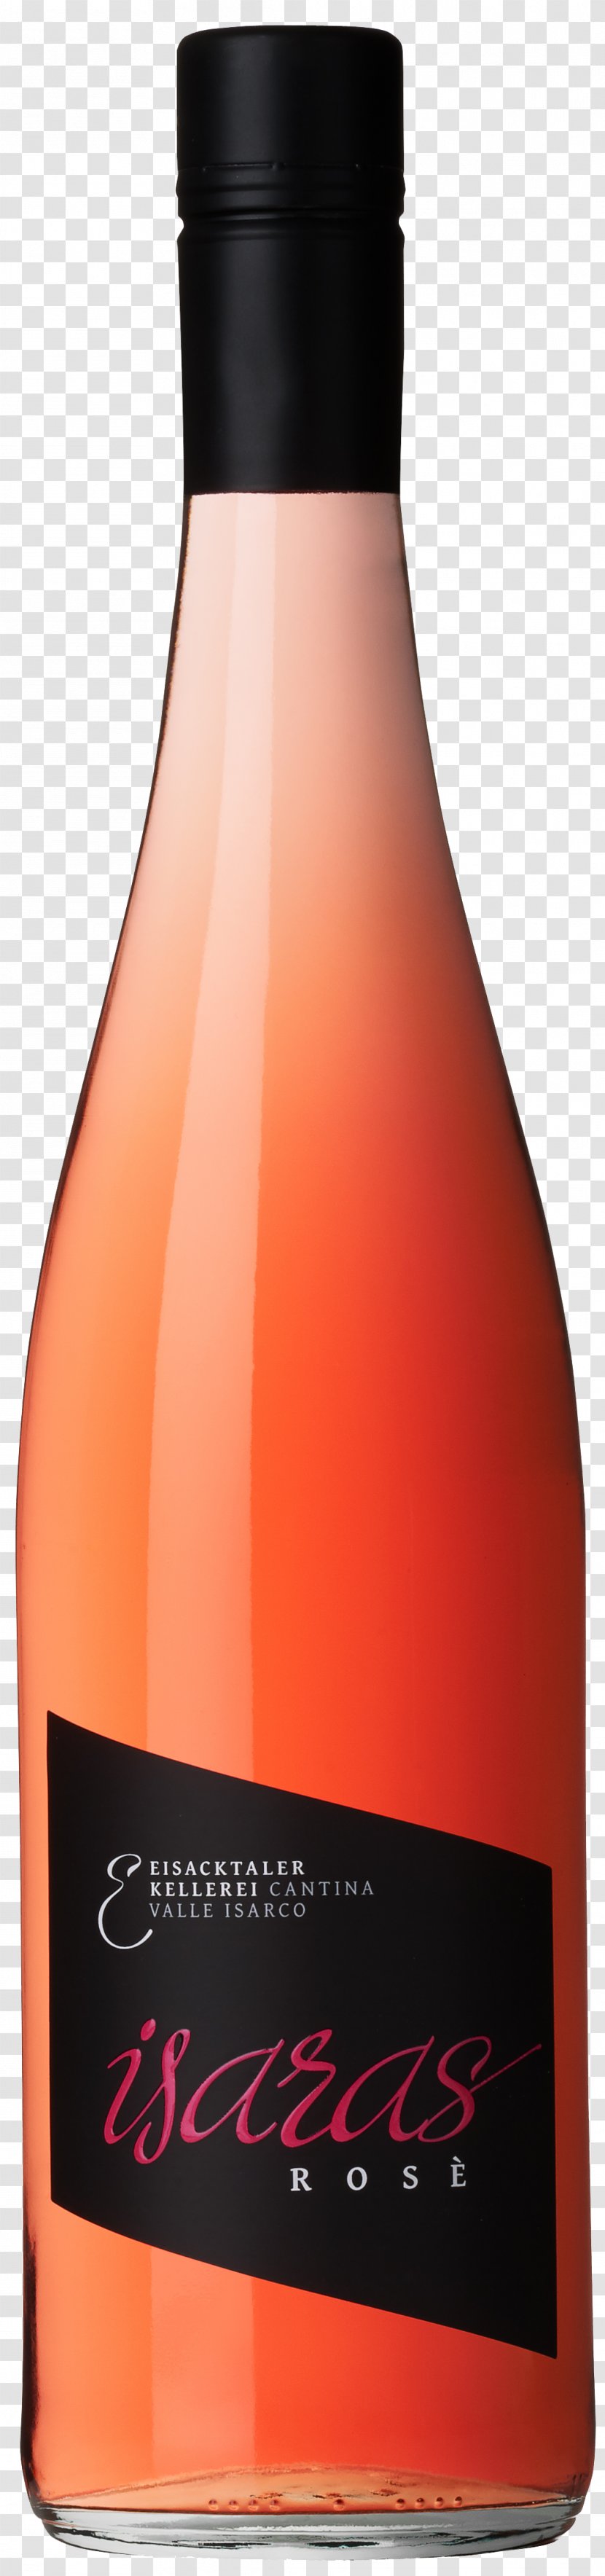 Liqueur Wine Bottle Product - Drink Transparent PNG